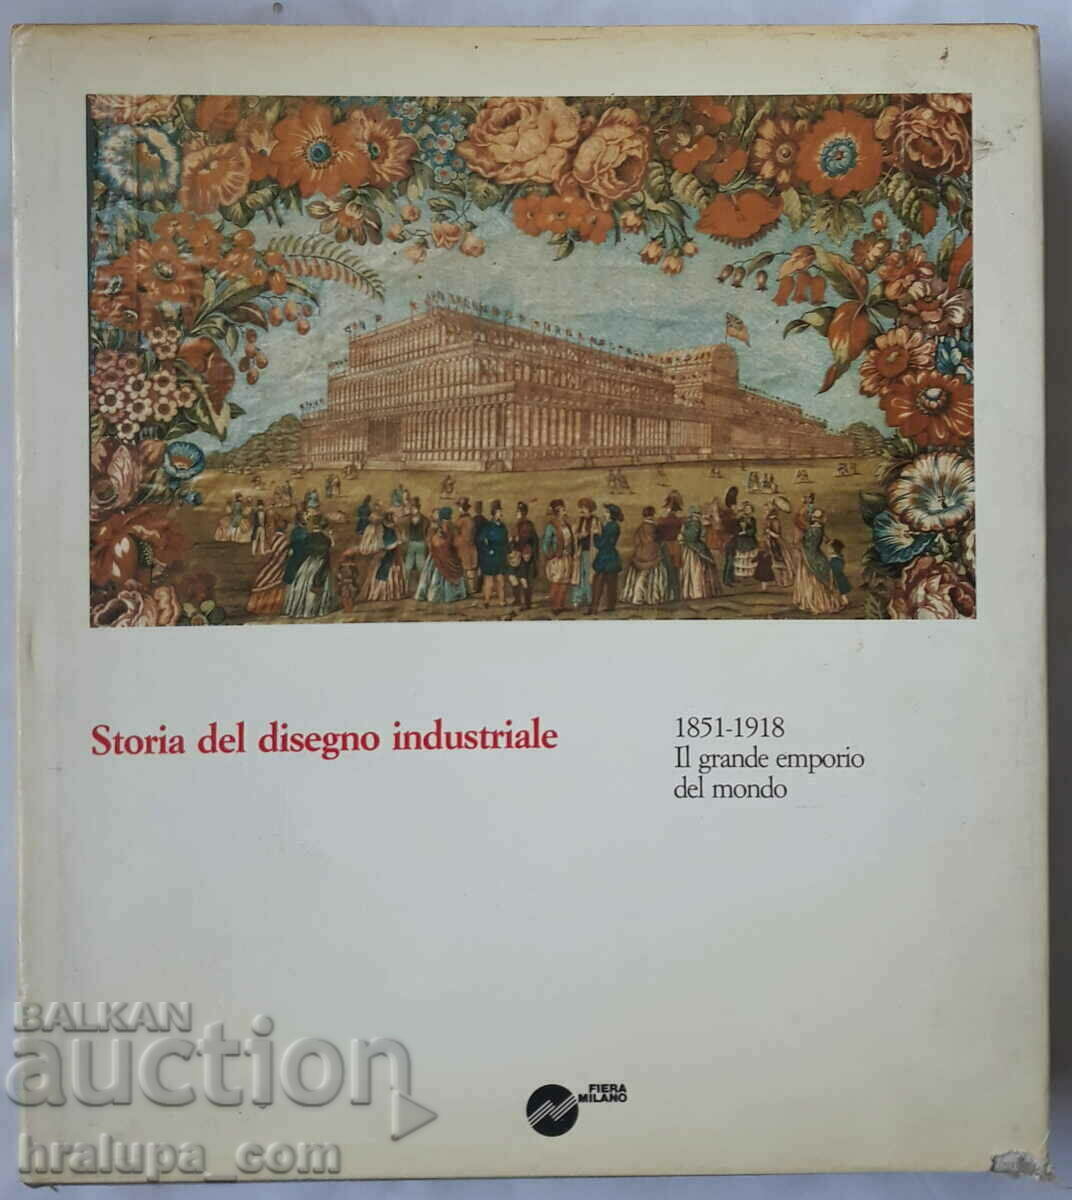 The book Storia del disegno industriale 1851-1918